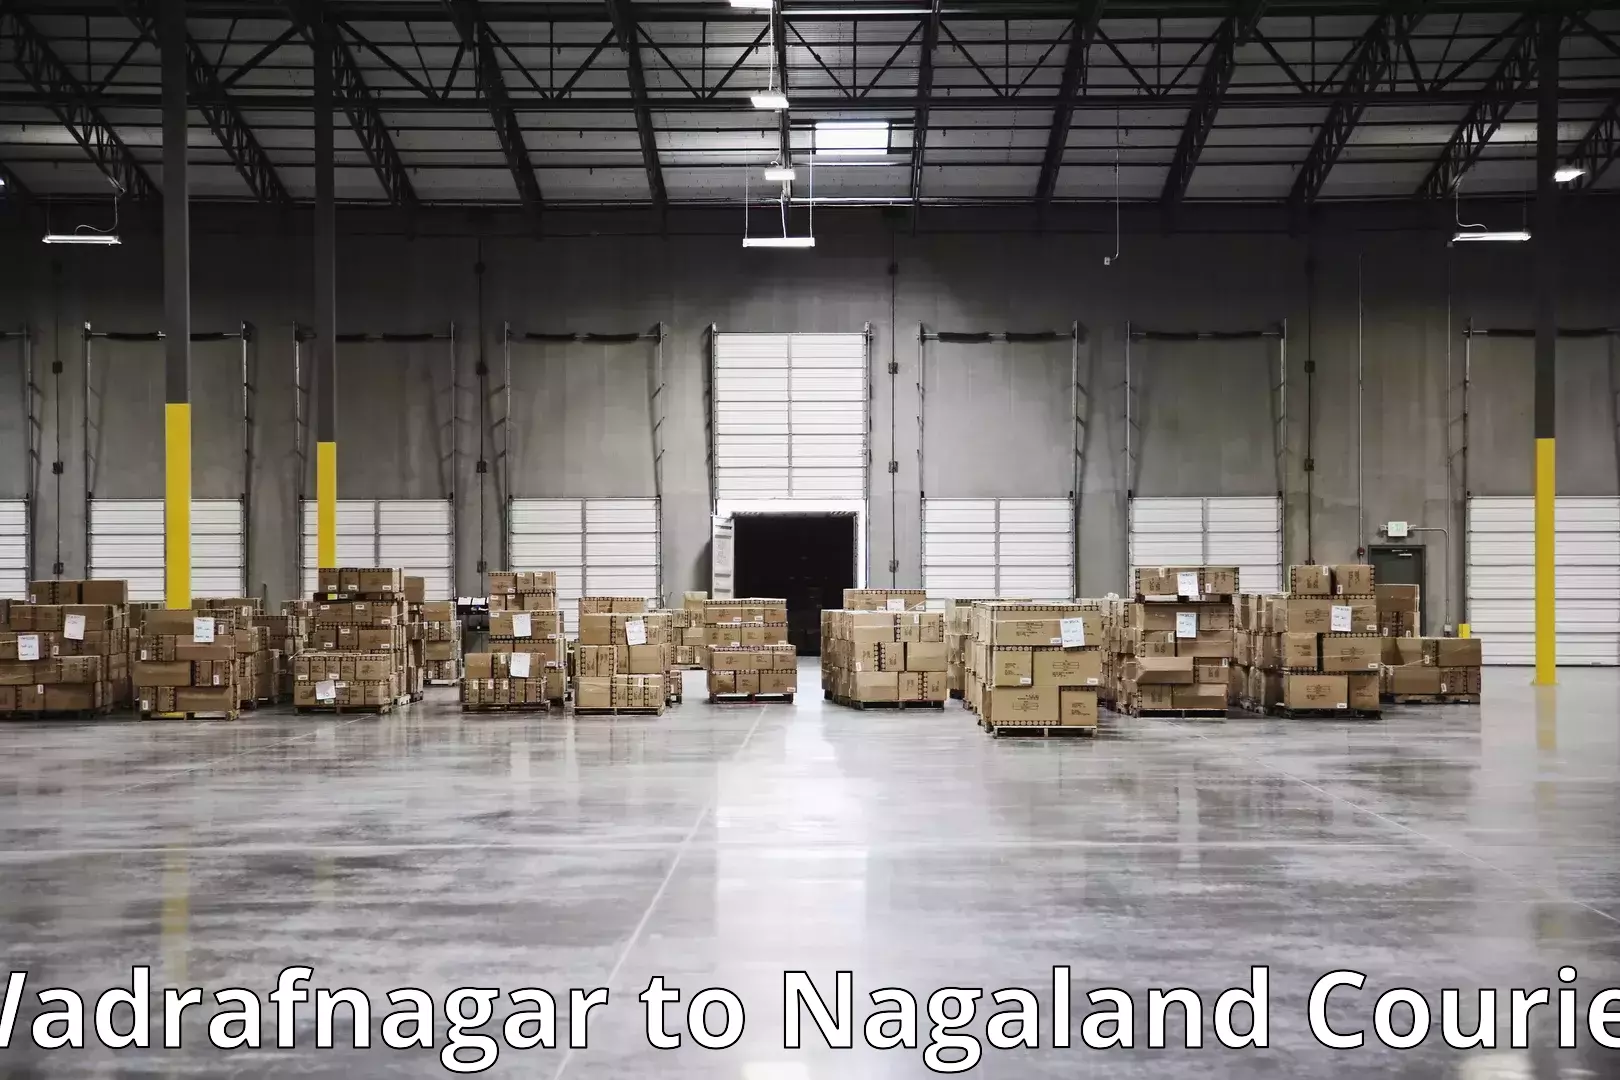 Furniture moving experts Wadrafnagar to NIT Nagaland